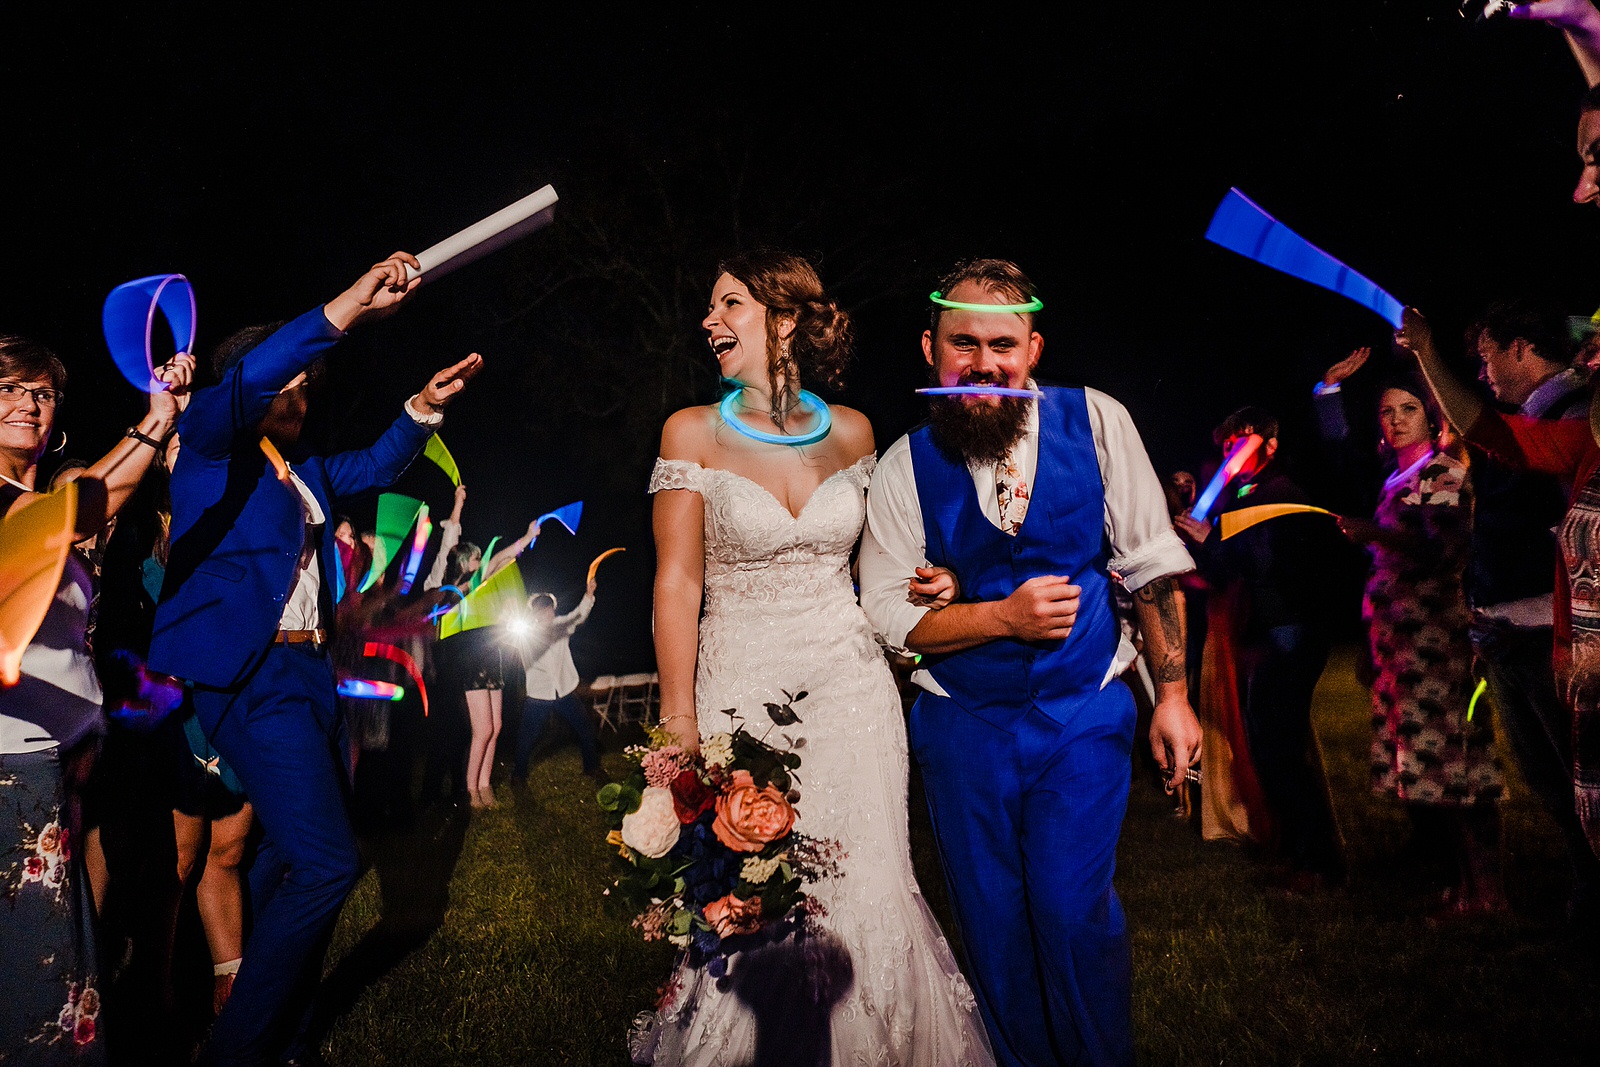 Glow Stick Wedding Exit